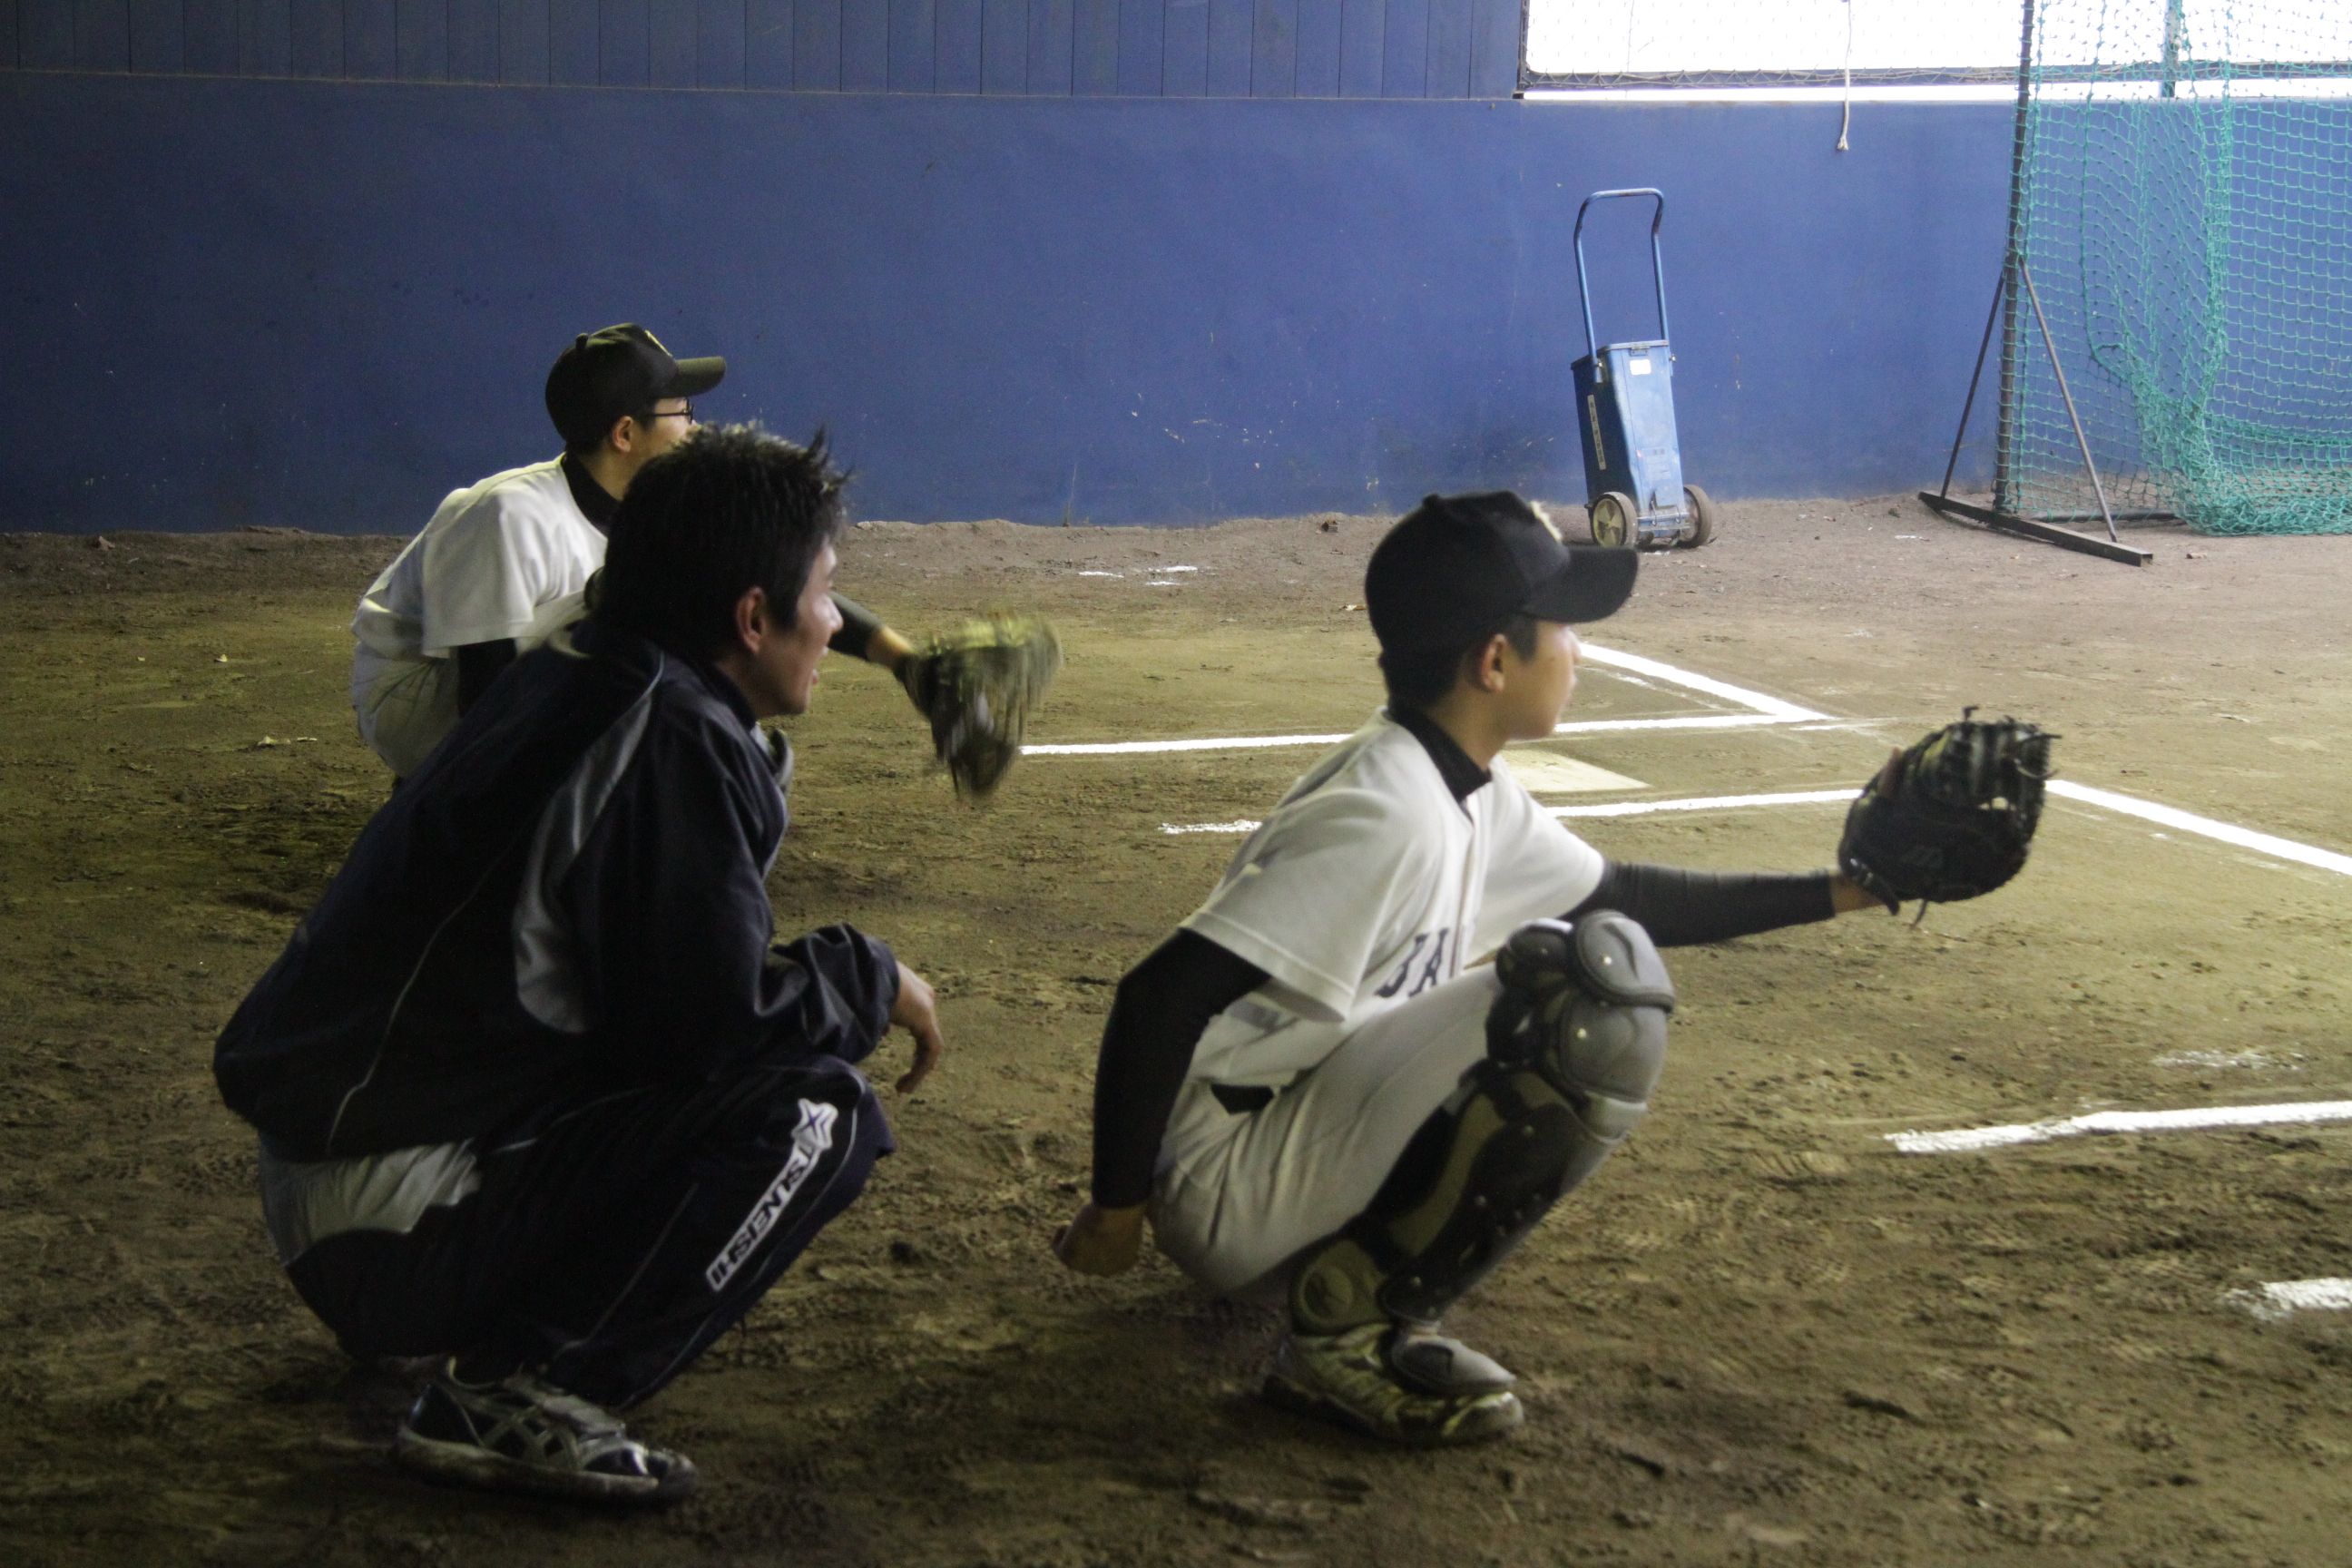 ツネイシ硬式野球部員による野球教室（キャッチャーへの指導）